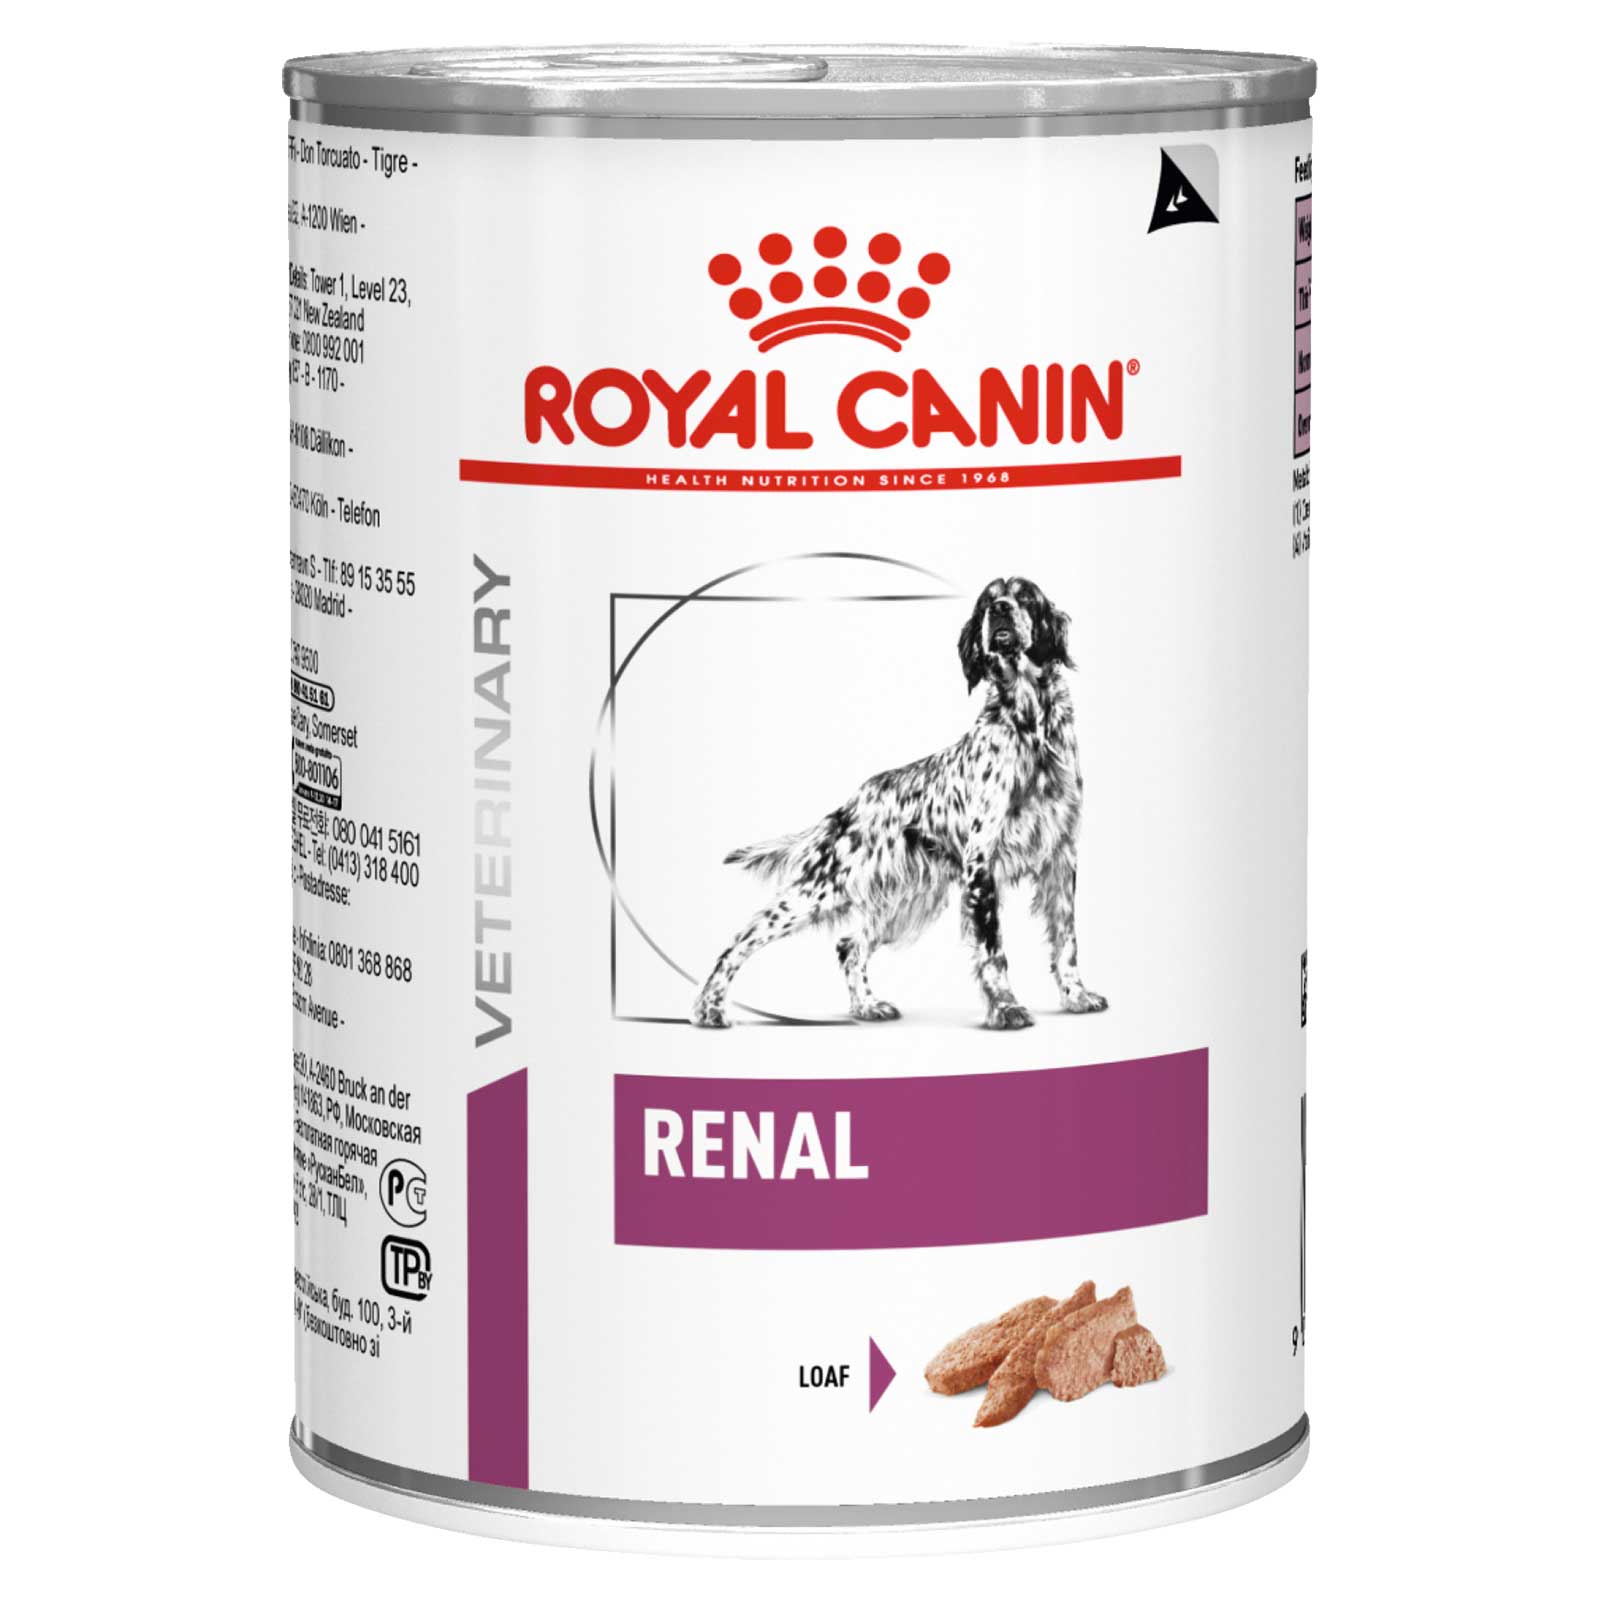 Купить лечебный корм для собак. Royal Canin Gastro intestinal для щенков консервы. Роял Канин Gastrointestinal для собак. Royal Canin Gastro intestinal Low fat для собак консервы. Гастро Интестинал Лоу фэт для собак консервы.